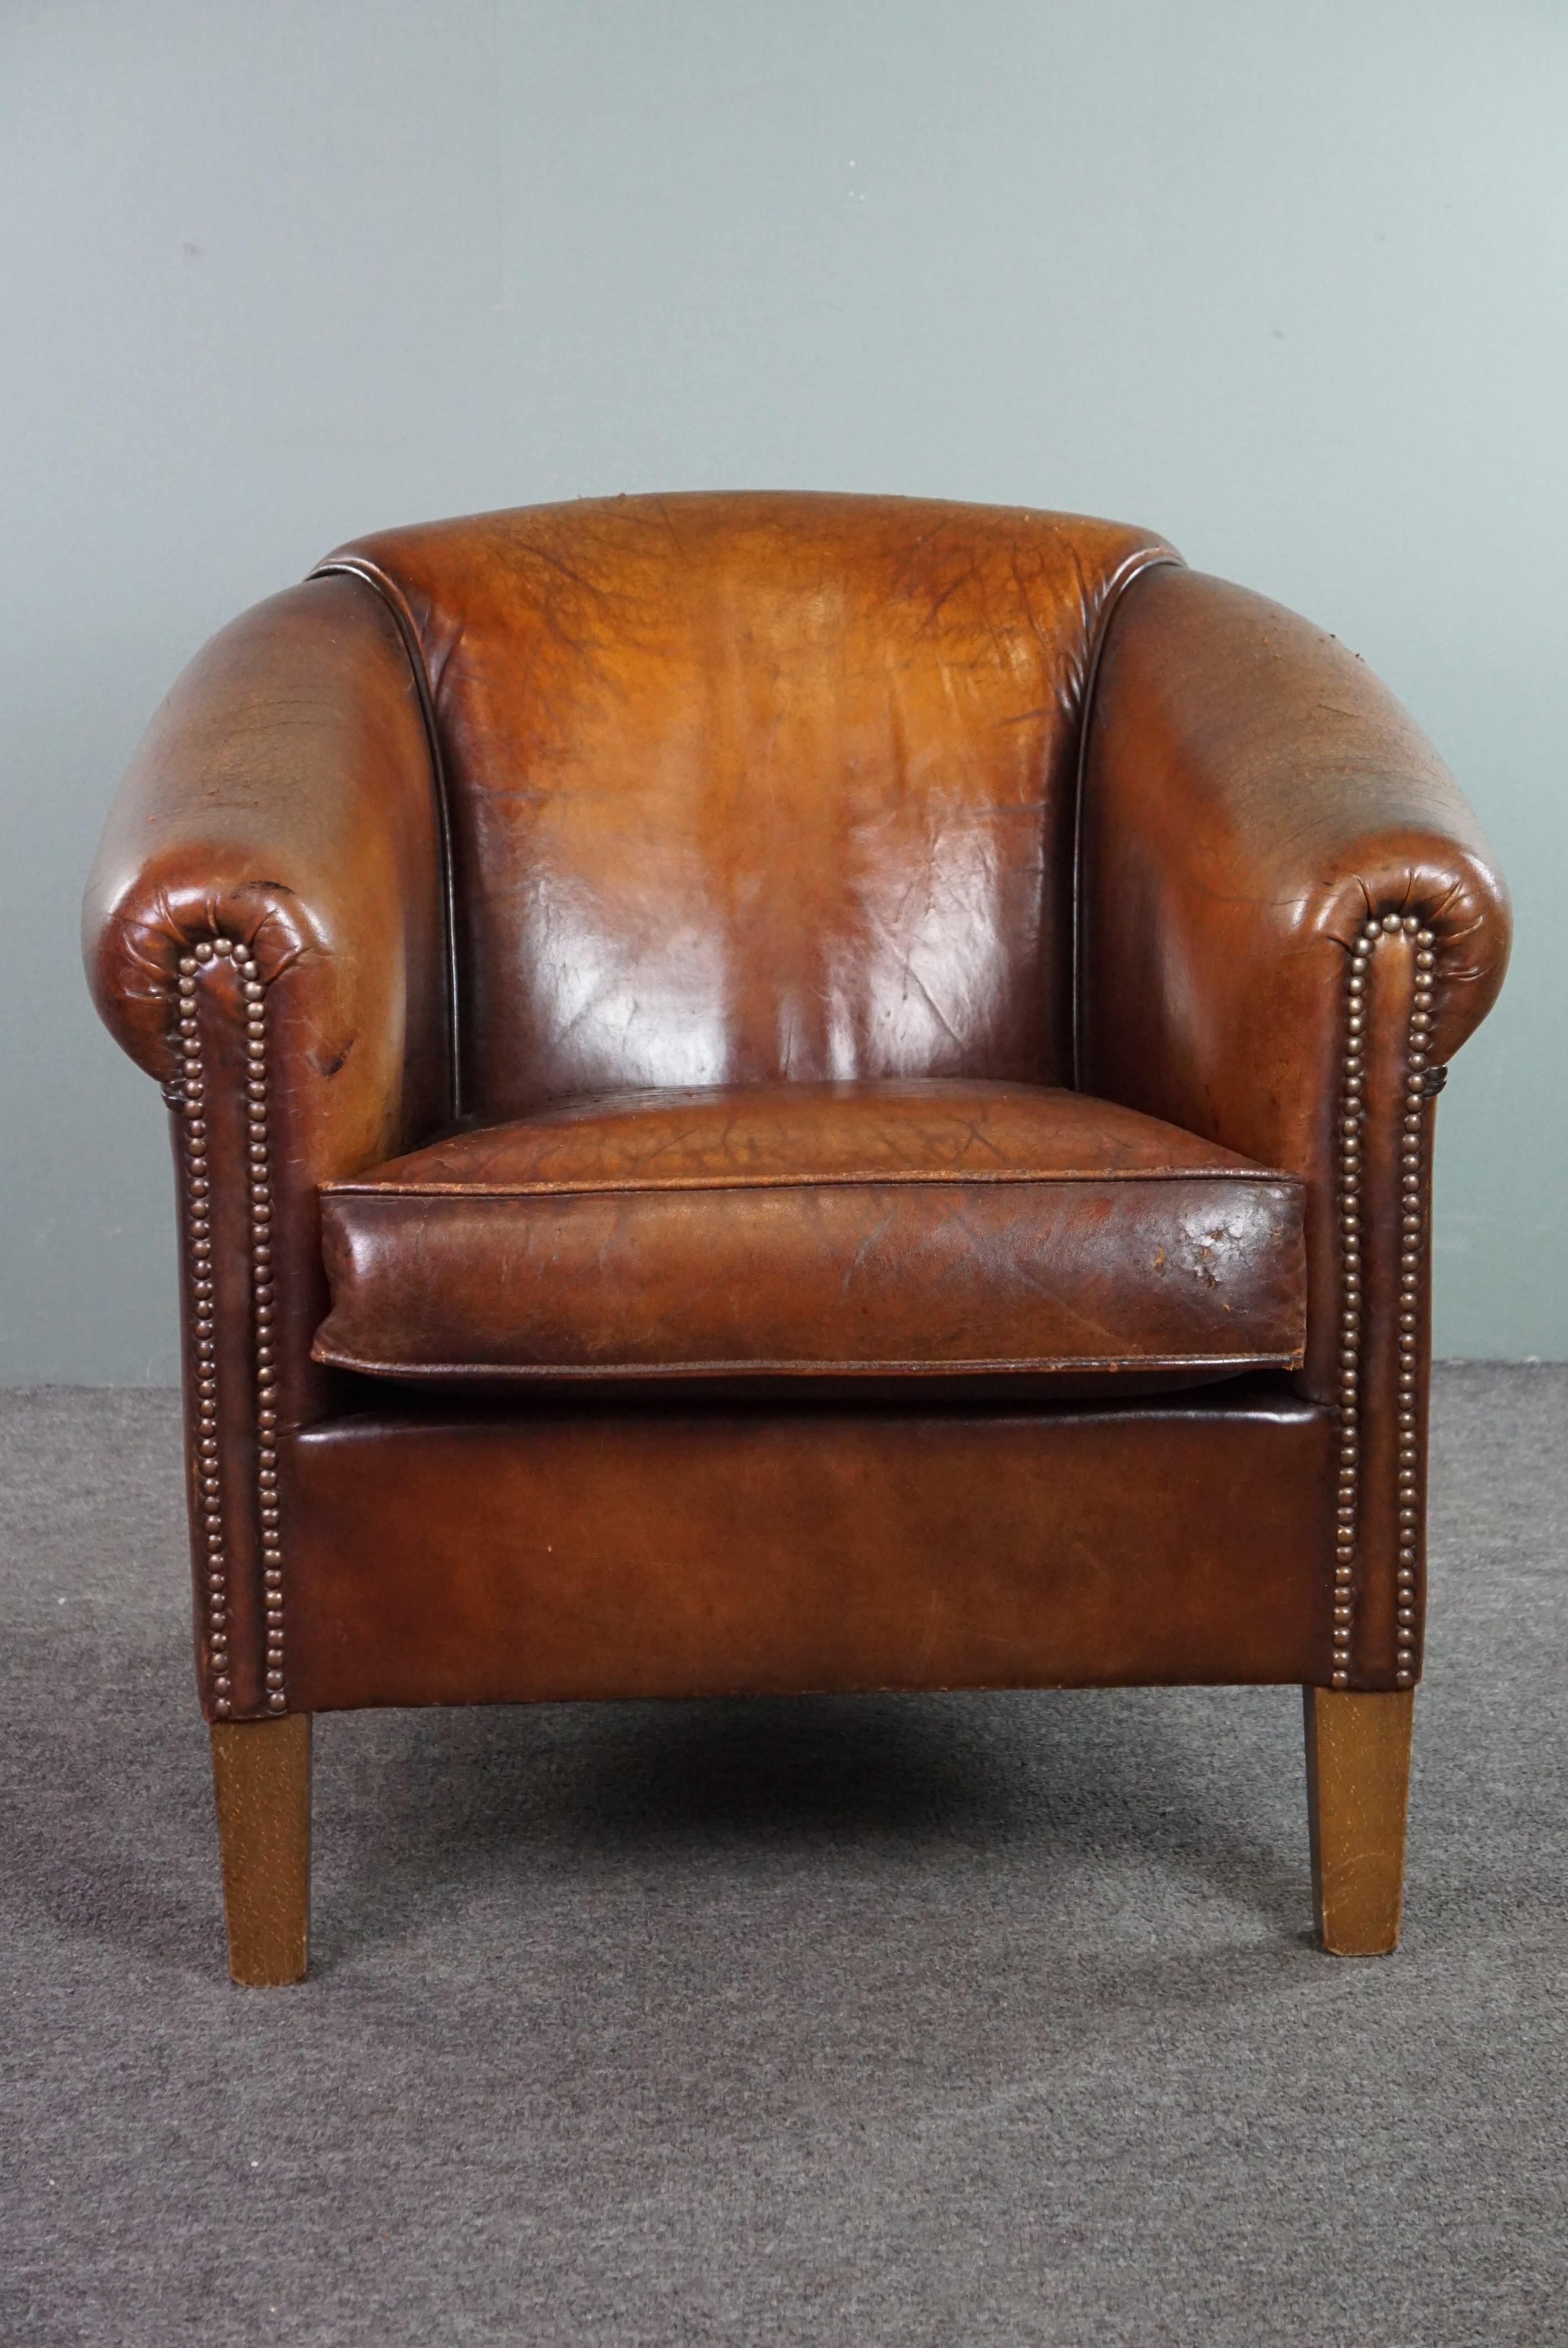 ByThijs bietet diesen bequemen und robusten Vintage-Schafsfell-Sessel mit schönen Farben und einer schönen Patina an. Sind Sie auf der Suche nach einem charmanten Clubsessel aus Schaffell mit bequemer Sitzfläche, dem man sein Alter anmerkt? Dann